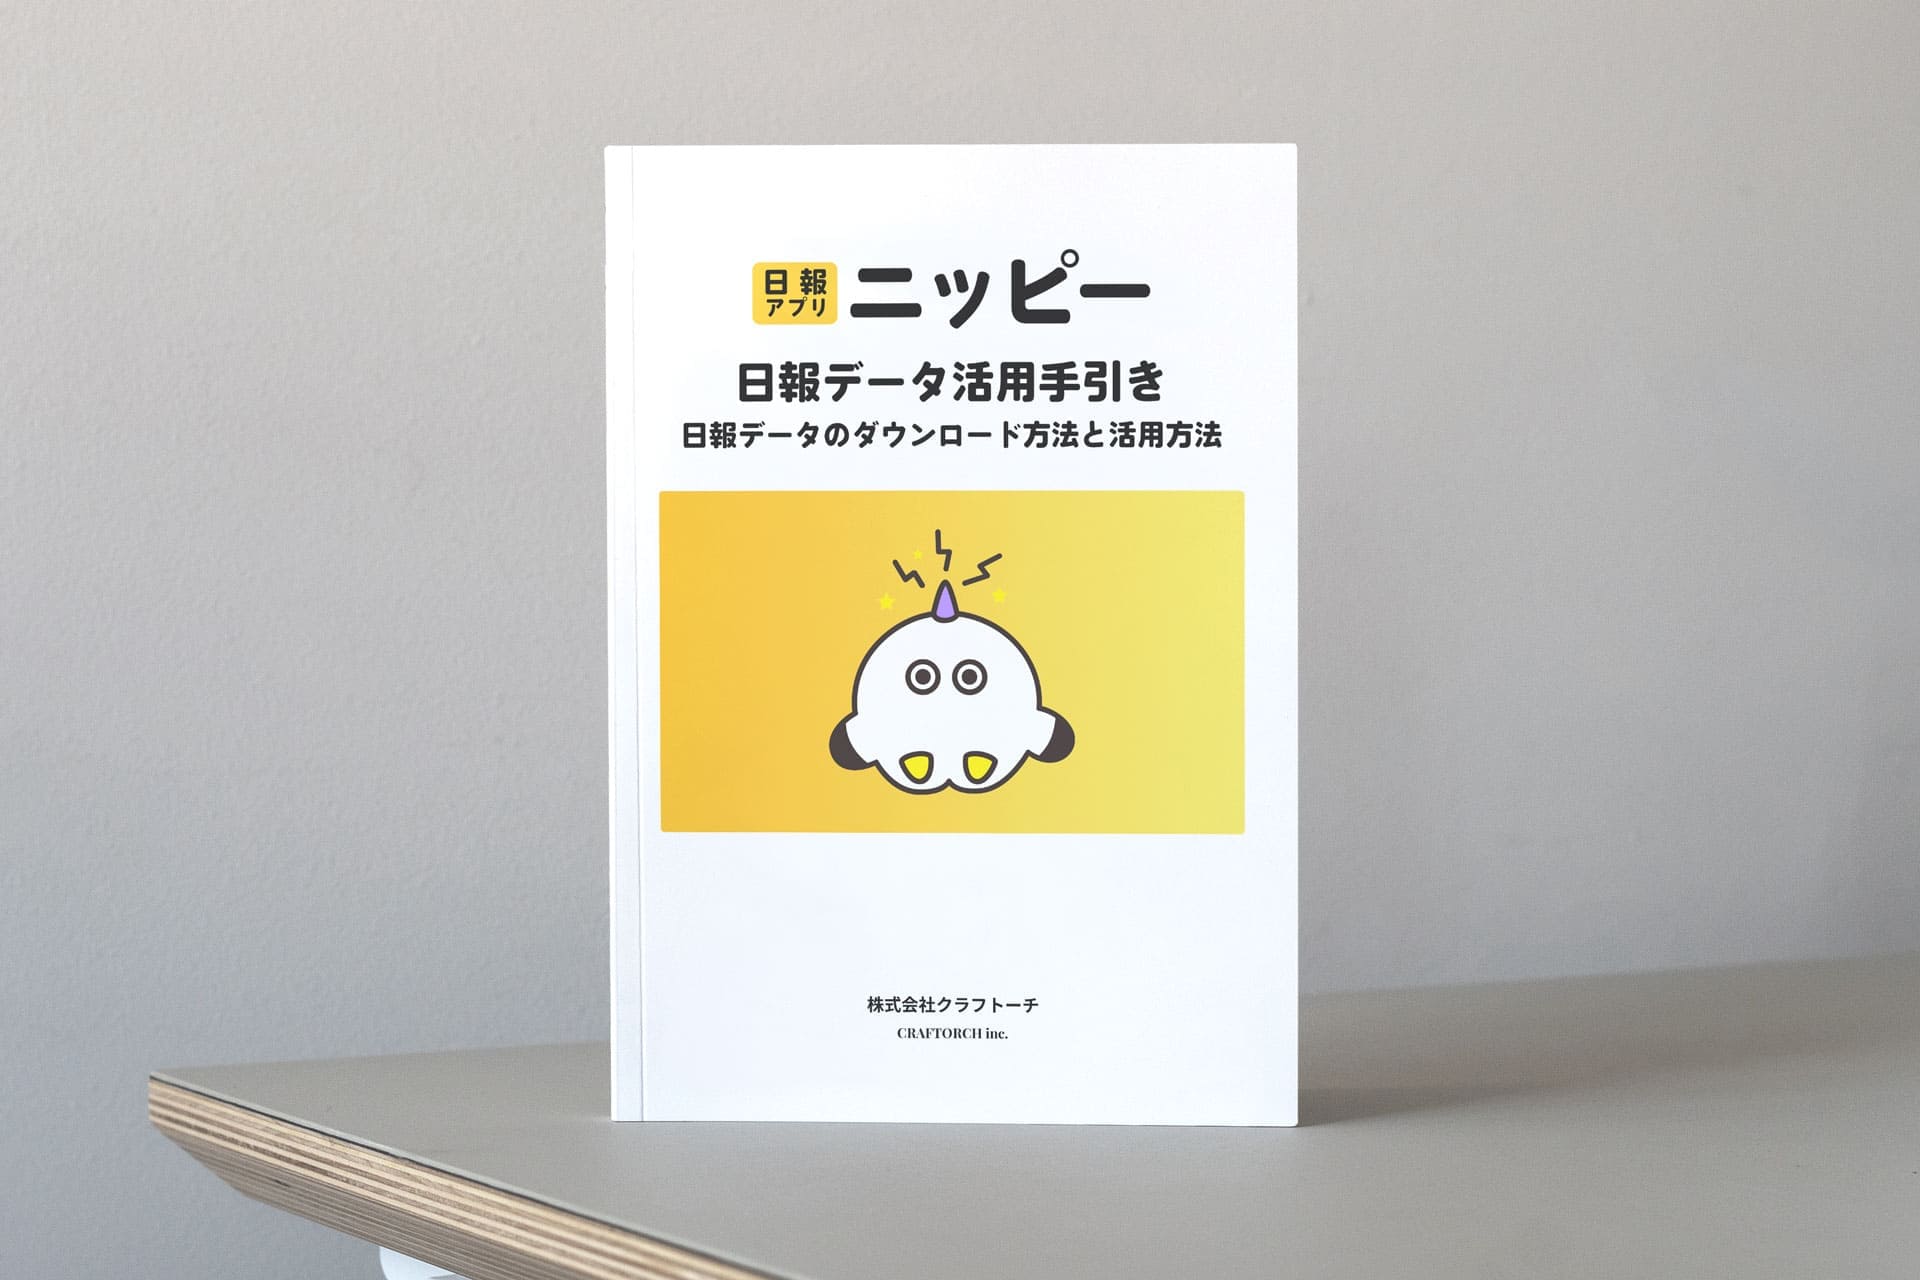 日報アプリ(ニッピー/Nippii)日報データ活用手引き